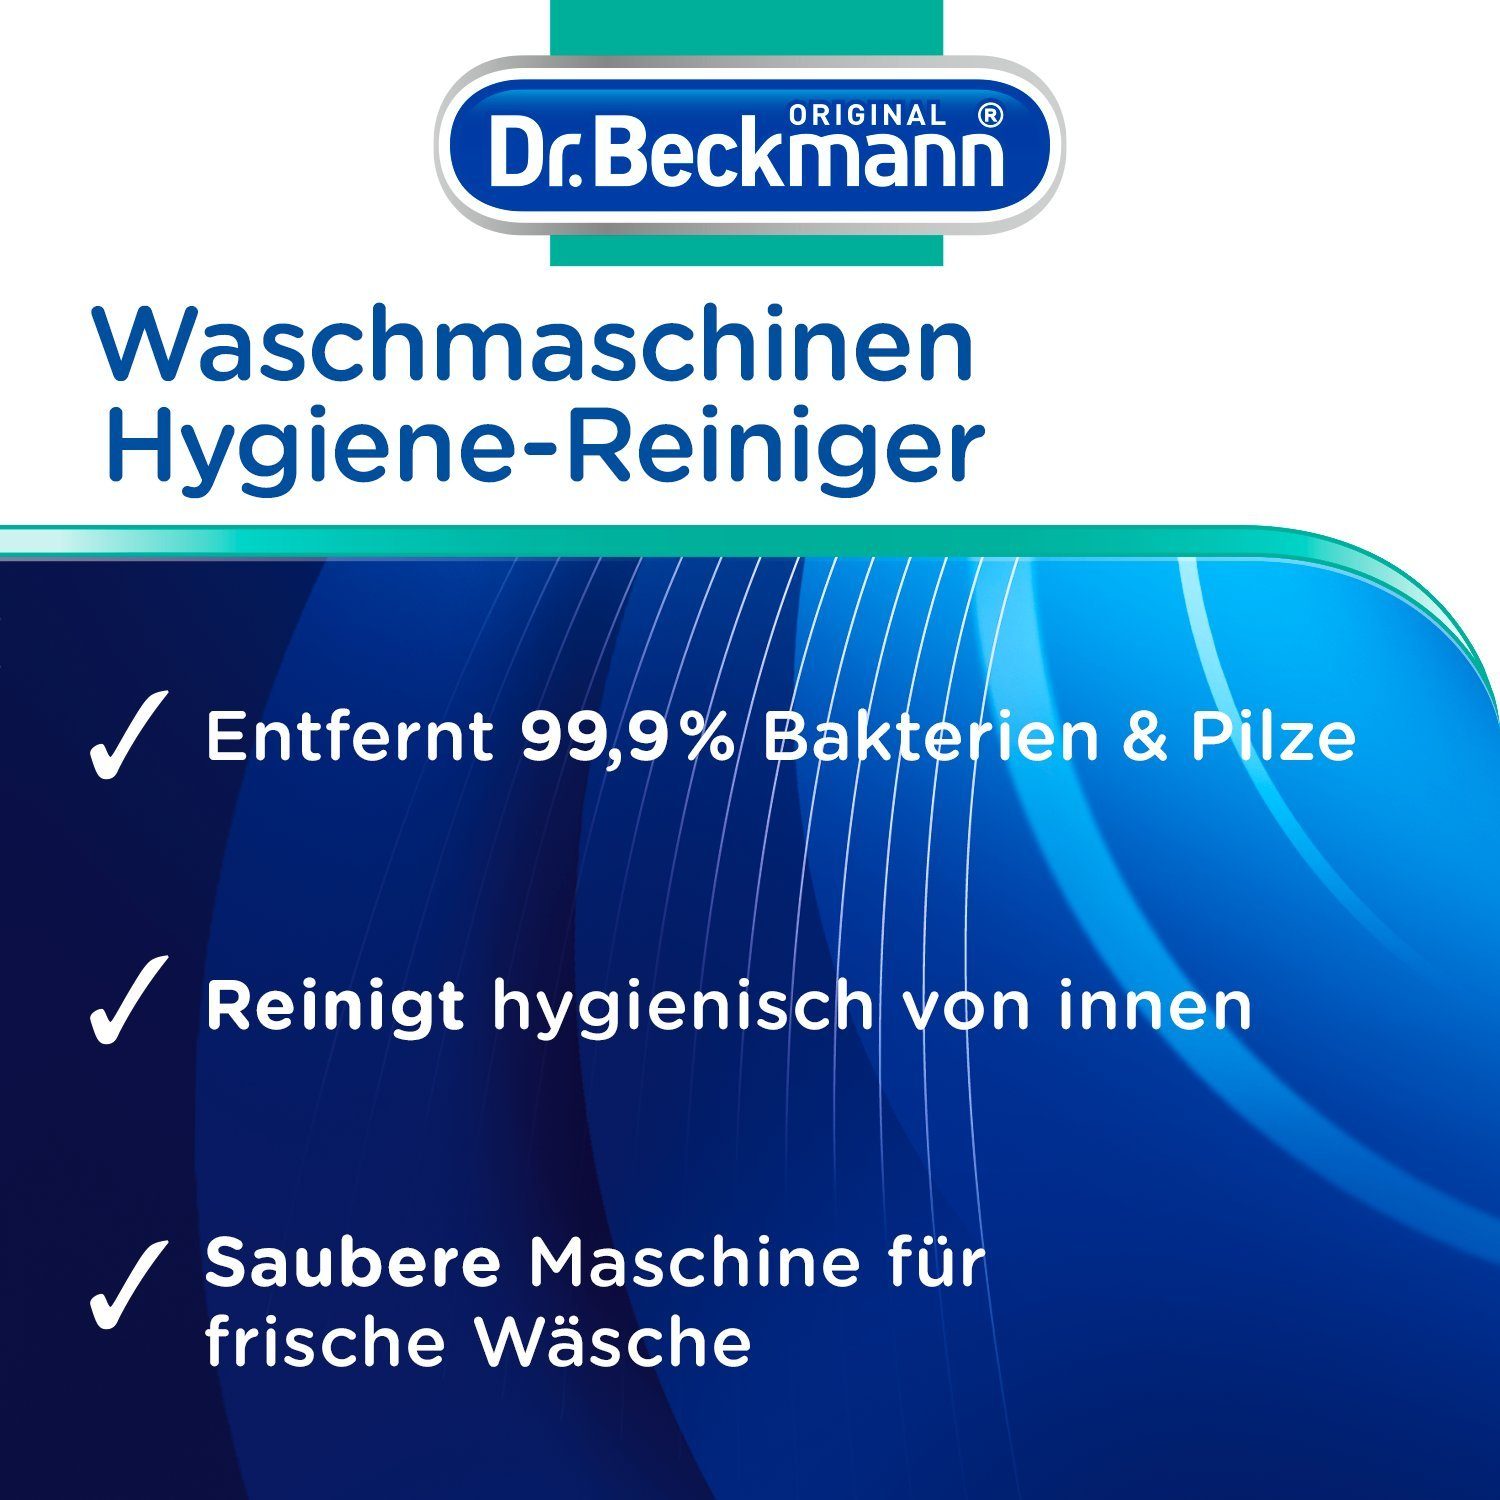 Waschmaschinen 250 Beckmann Maschinenreiniger, Dr. (1-St) g Waschmaschinenpflege Hygiene-Reiniger, 1x